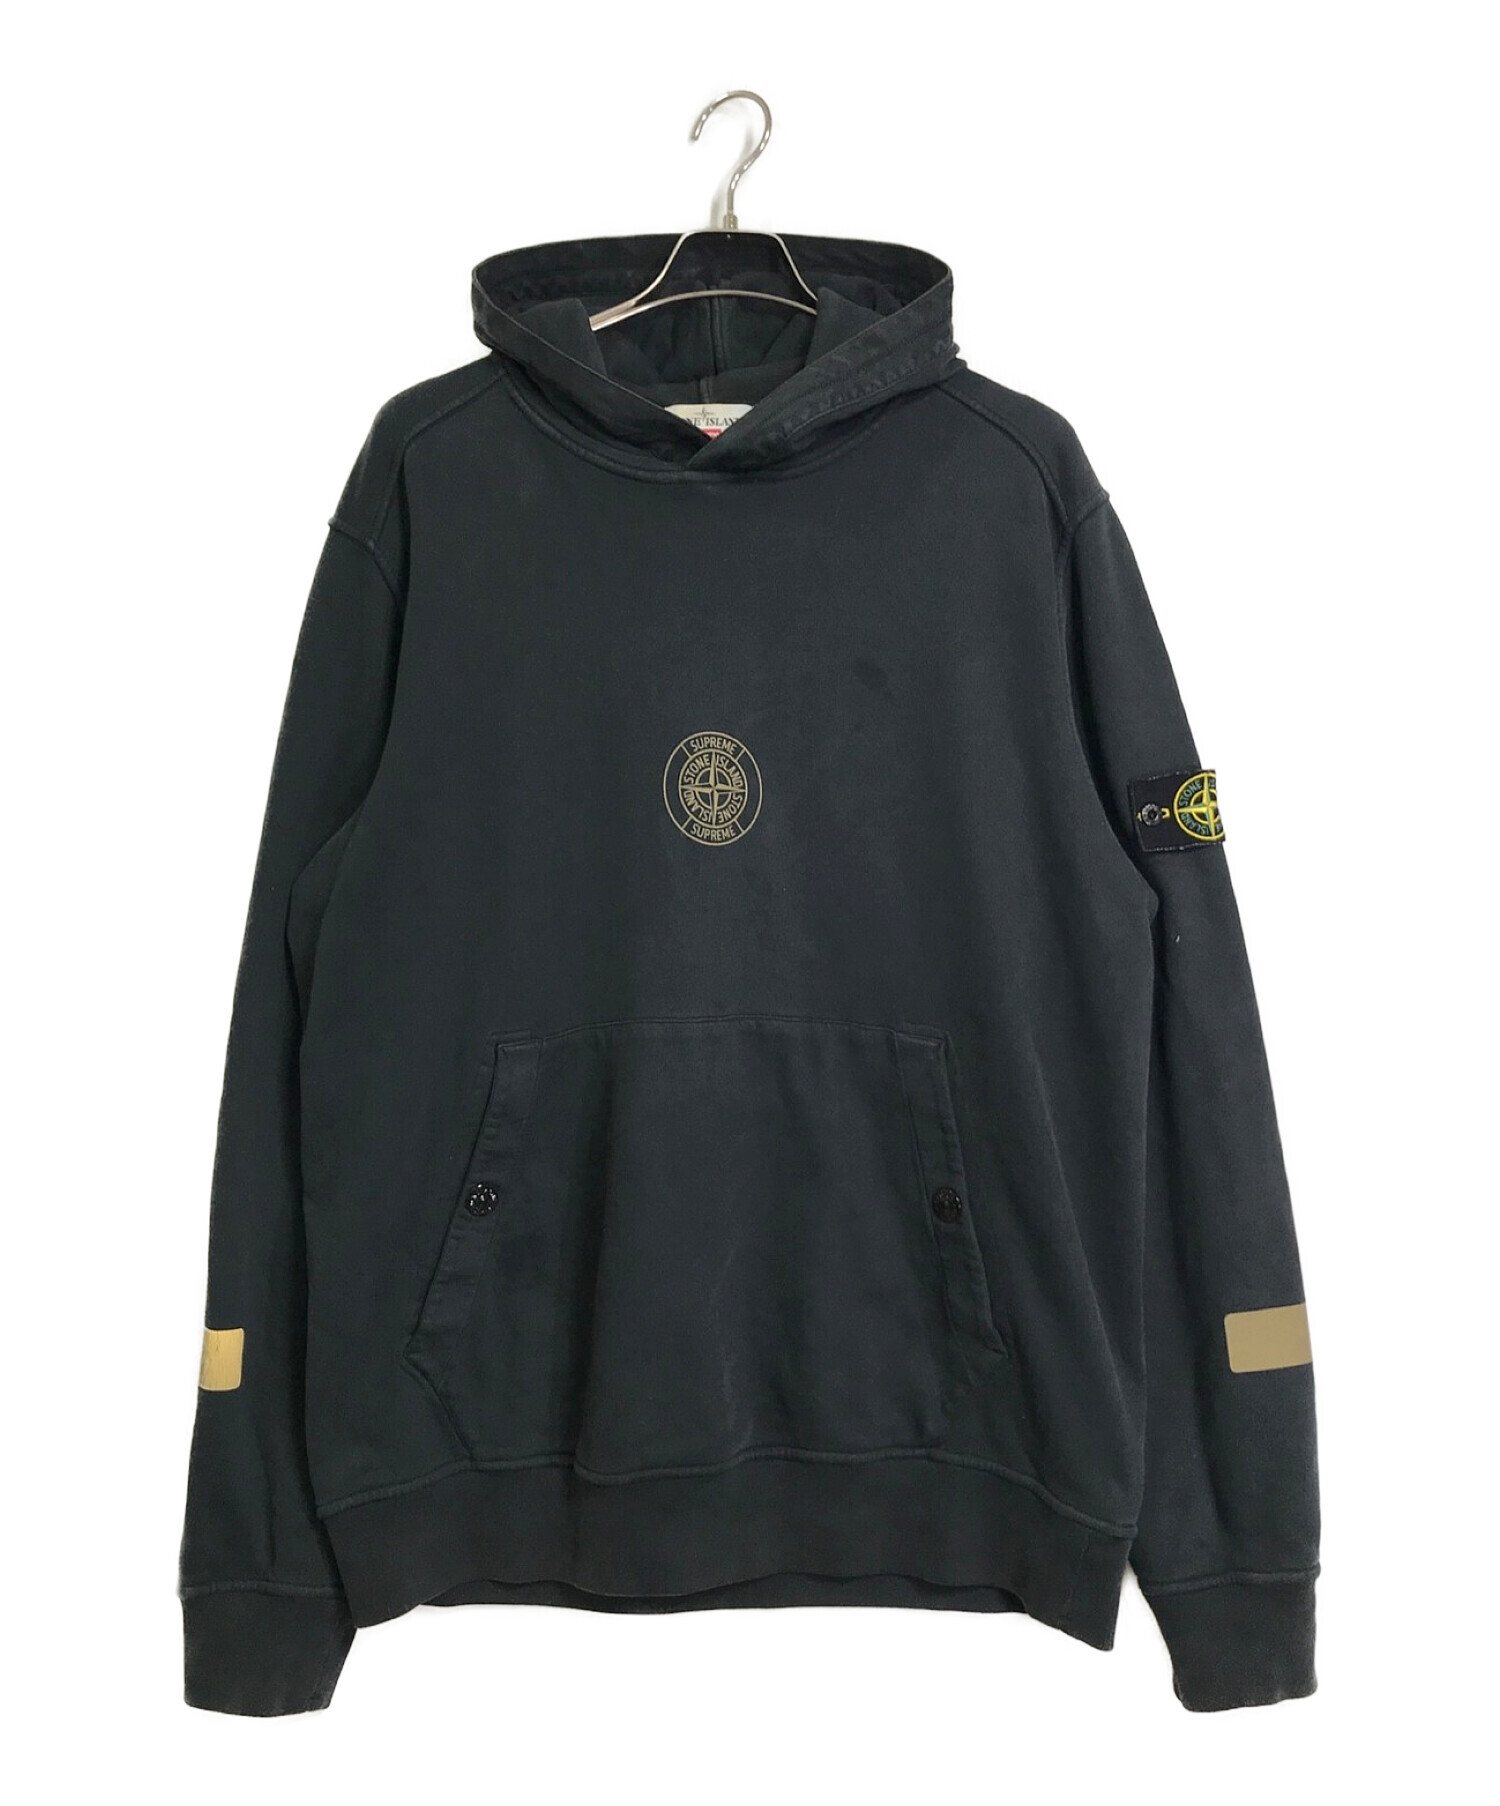 STONE ISLAND (ストーンアイランド) SUPREME (シュプリーム) Hooded Sweatshirt ブラック サイズ:XL